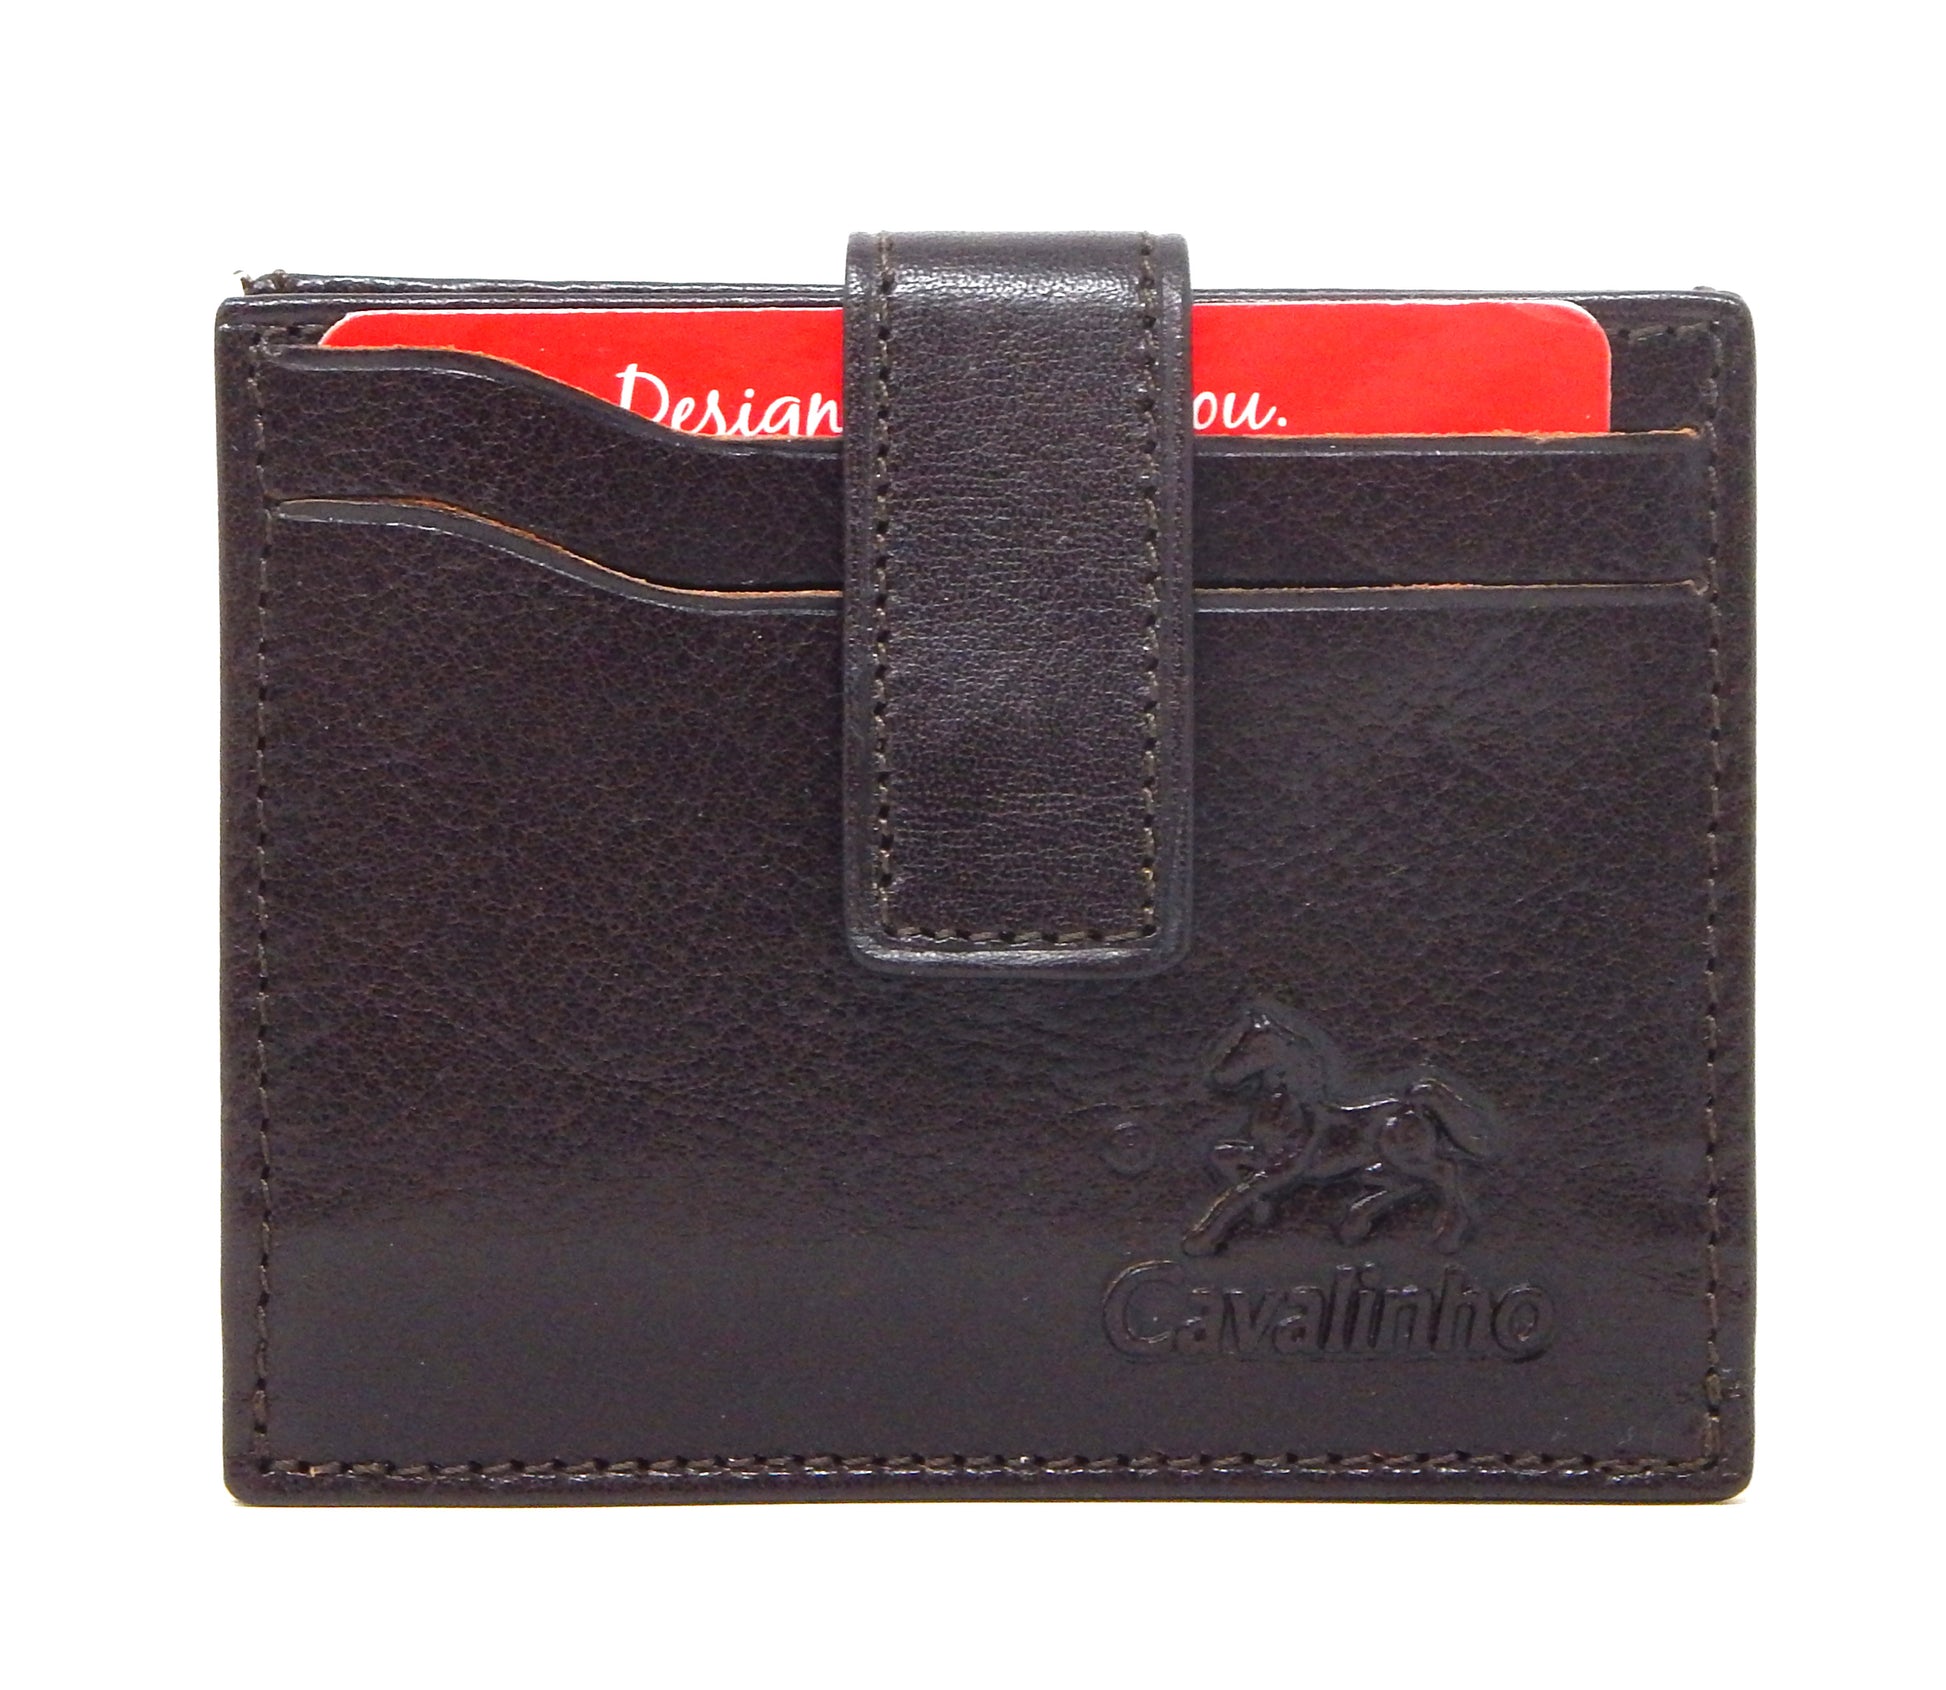 #color_ Brown | Cavalinho Leather Card Holder Wallet - Brown - 28610576.02.99_1